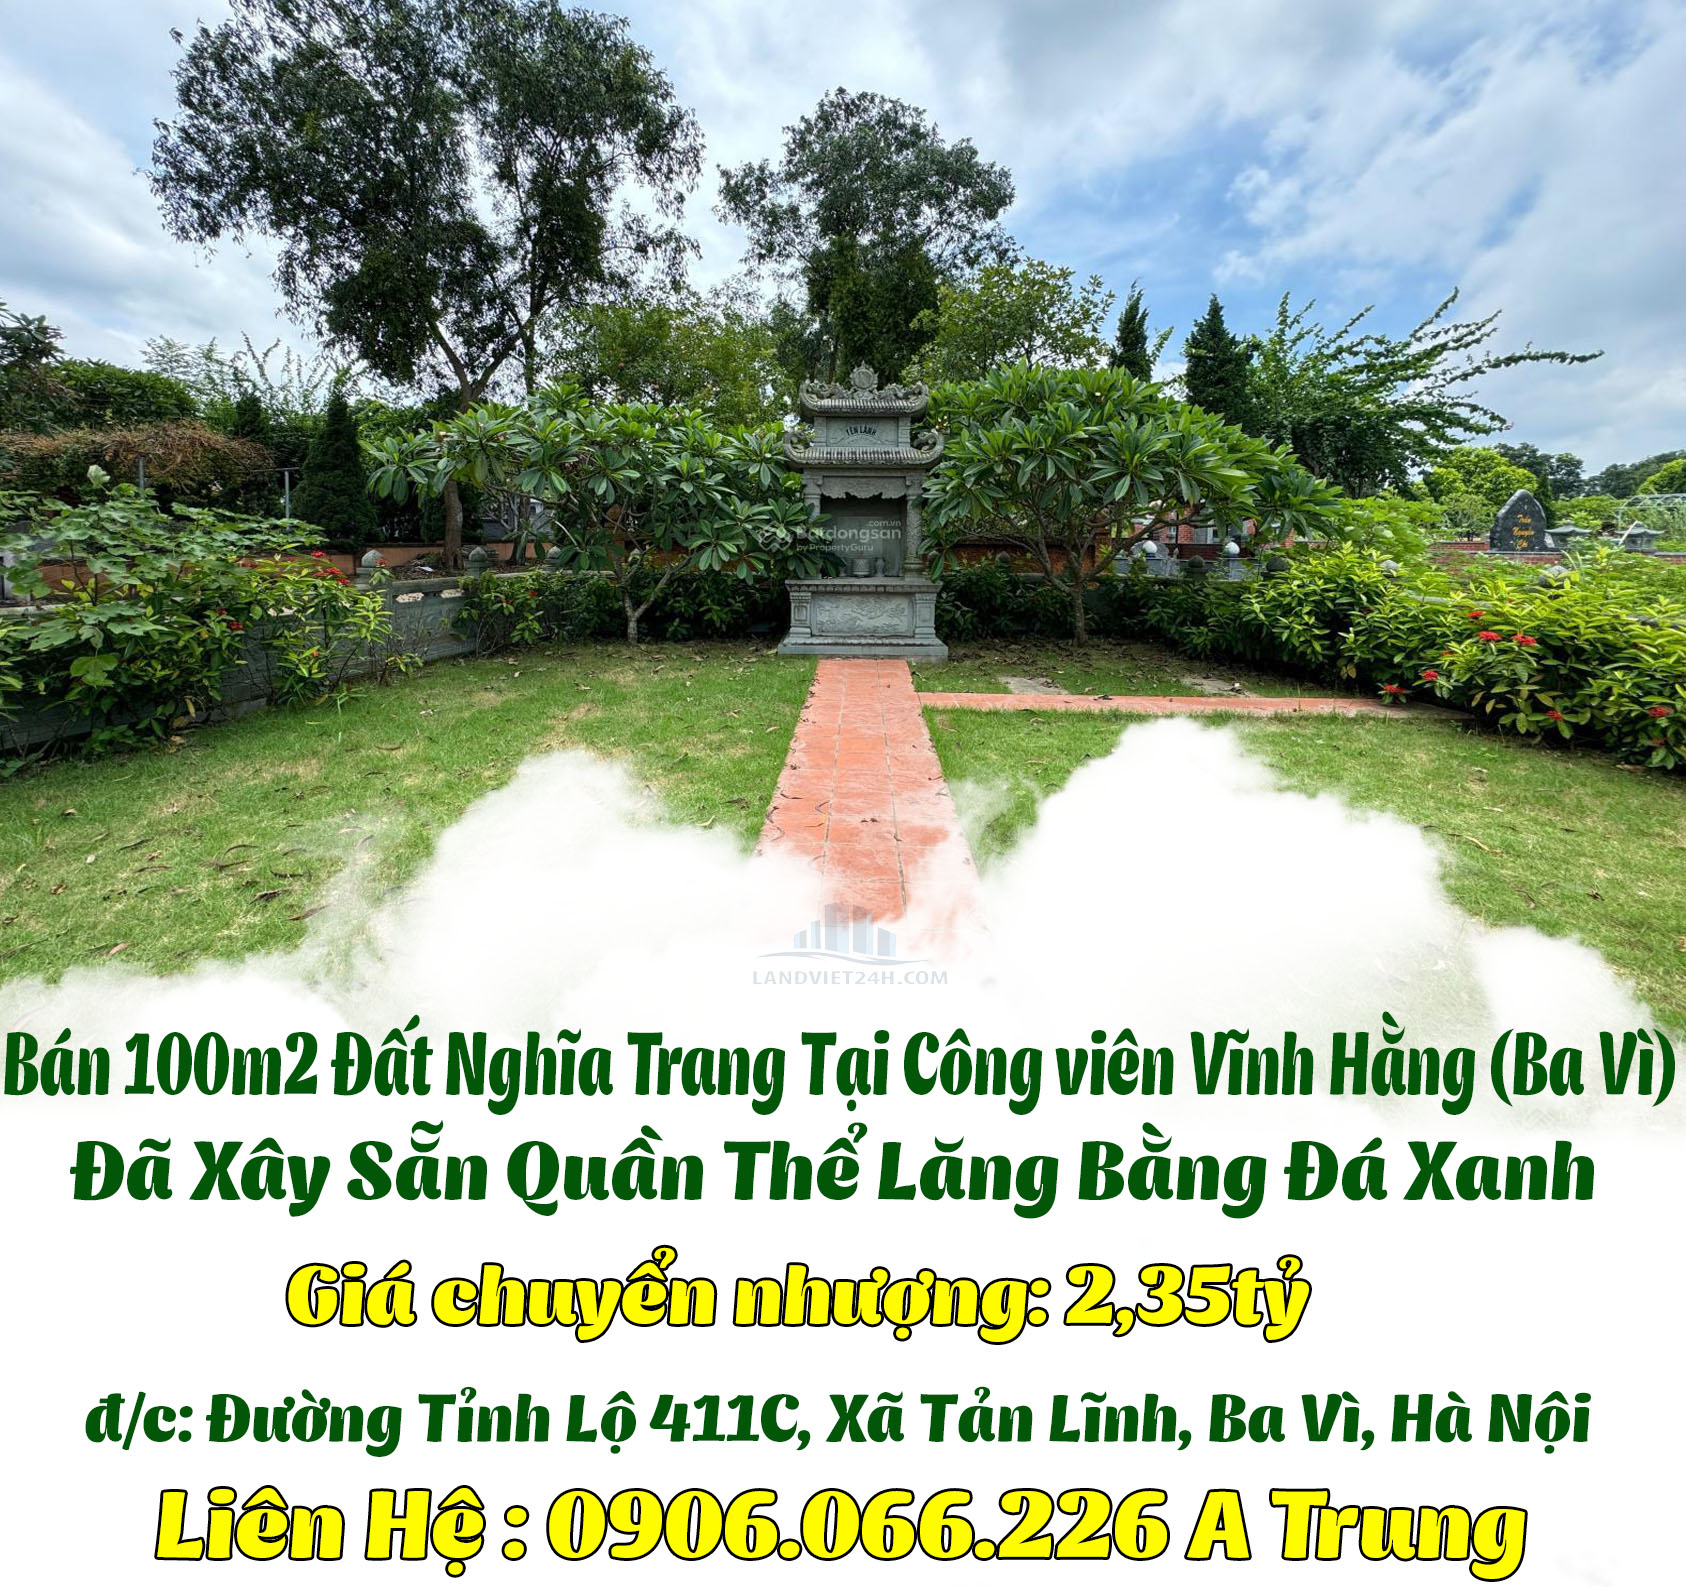 Bán 100m2 đất Nghĩa Trang tại công viên Vĩnh Hằng (Ba Vì), đã xây sẵn quần thể Lăng Bằng, Đá Xanh-01